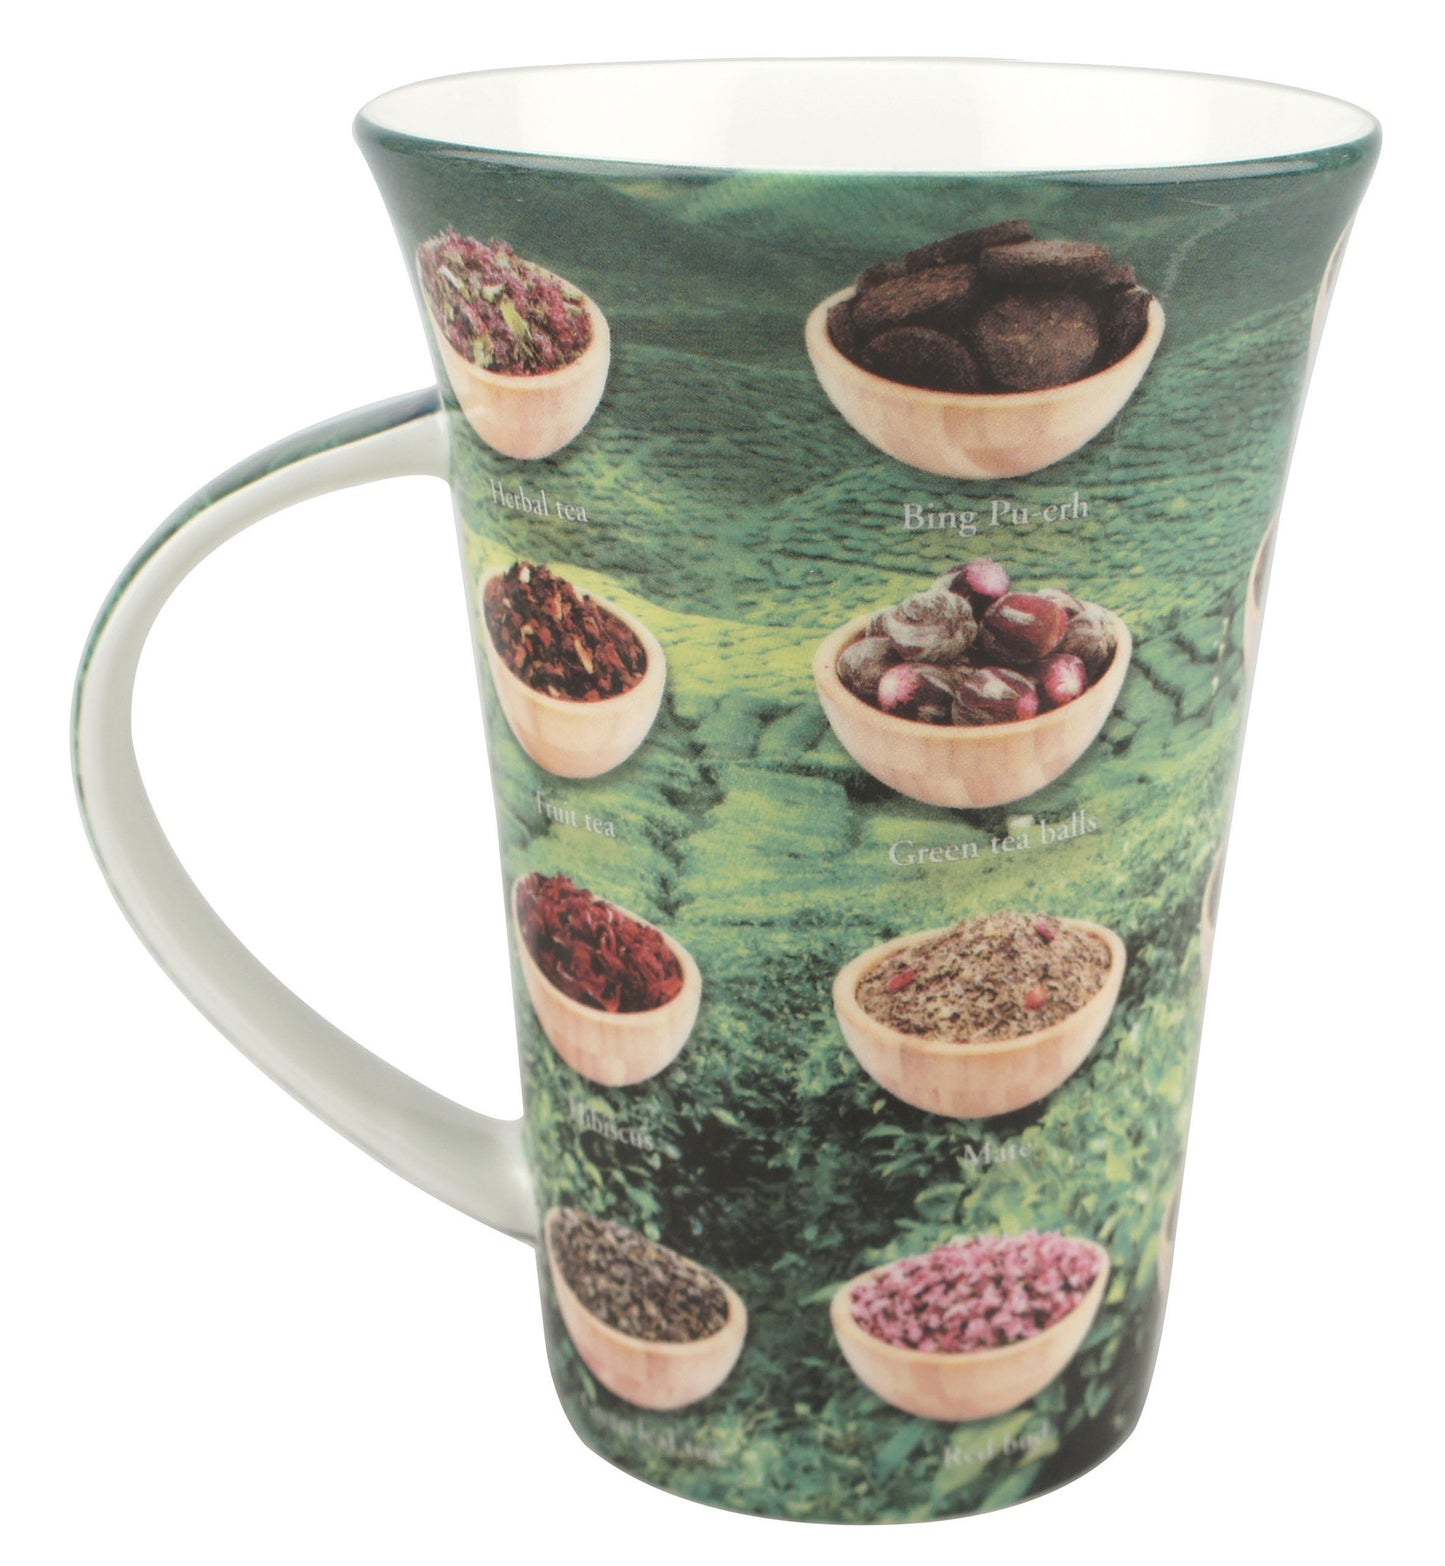 'Tea Varieties' i-Mug $10.95